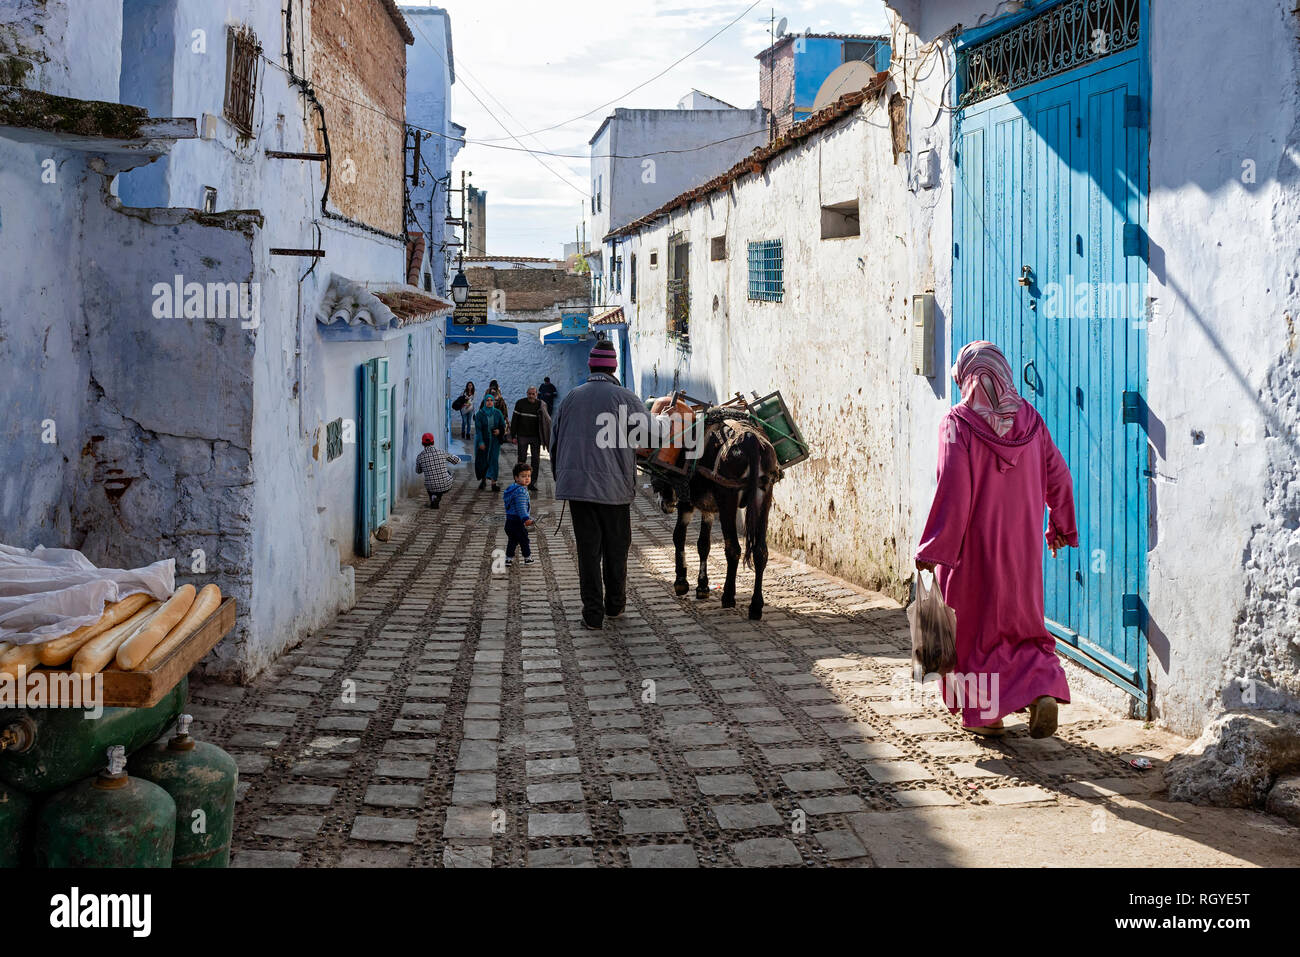 La gente del posto per fare shopping, lavorando e passeggiando per la città vecchia. Immagine di un giorno ordinario a Chefchaouen, Marocco Foto Stock